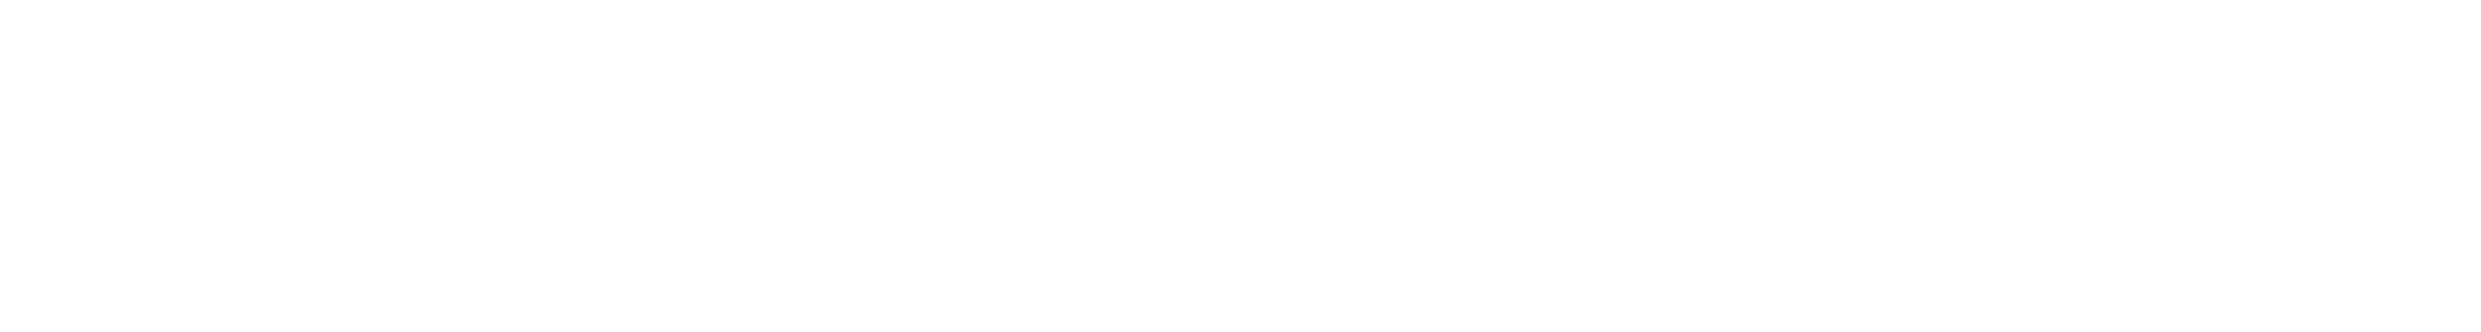 MeyerBurger_LogoWhite_RGB.png